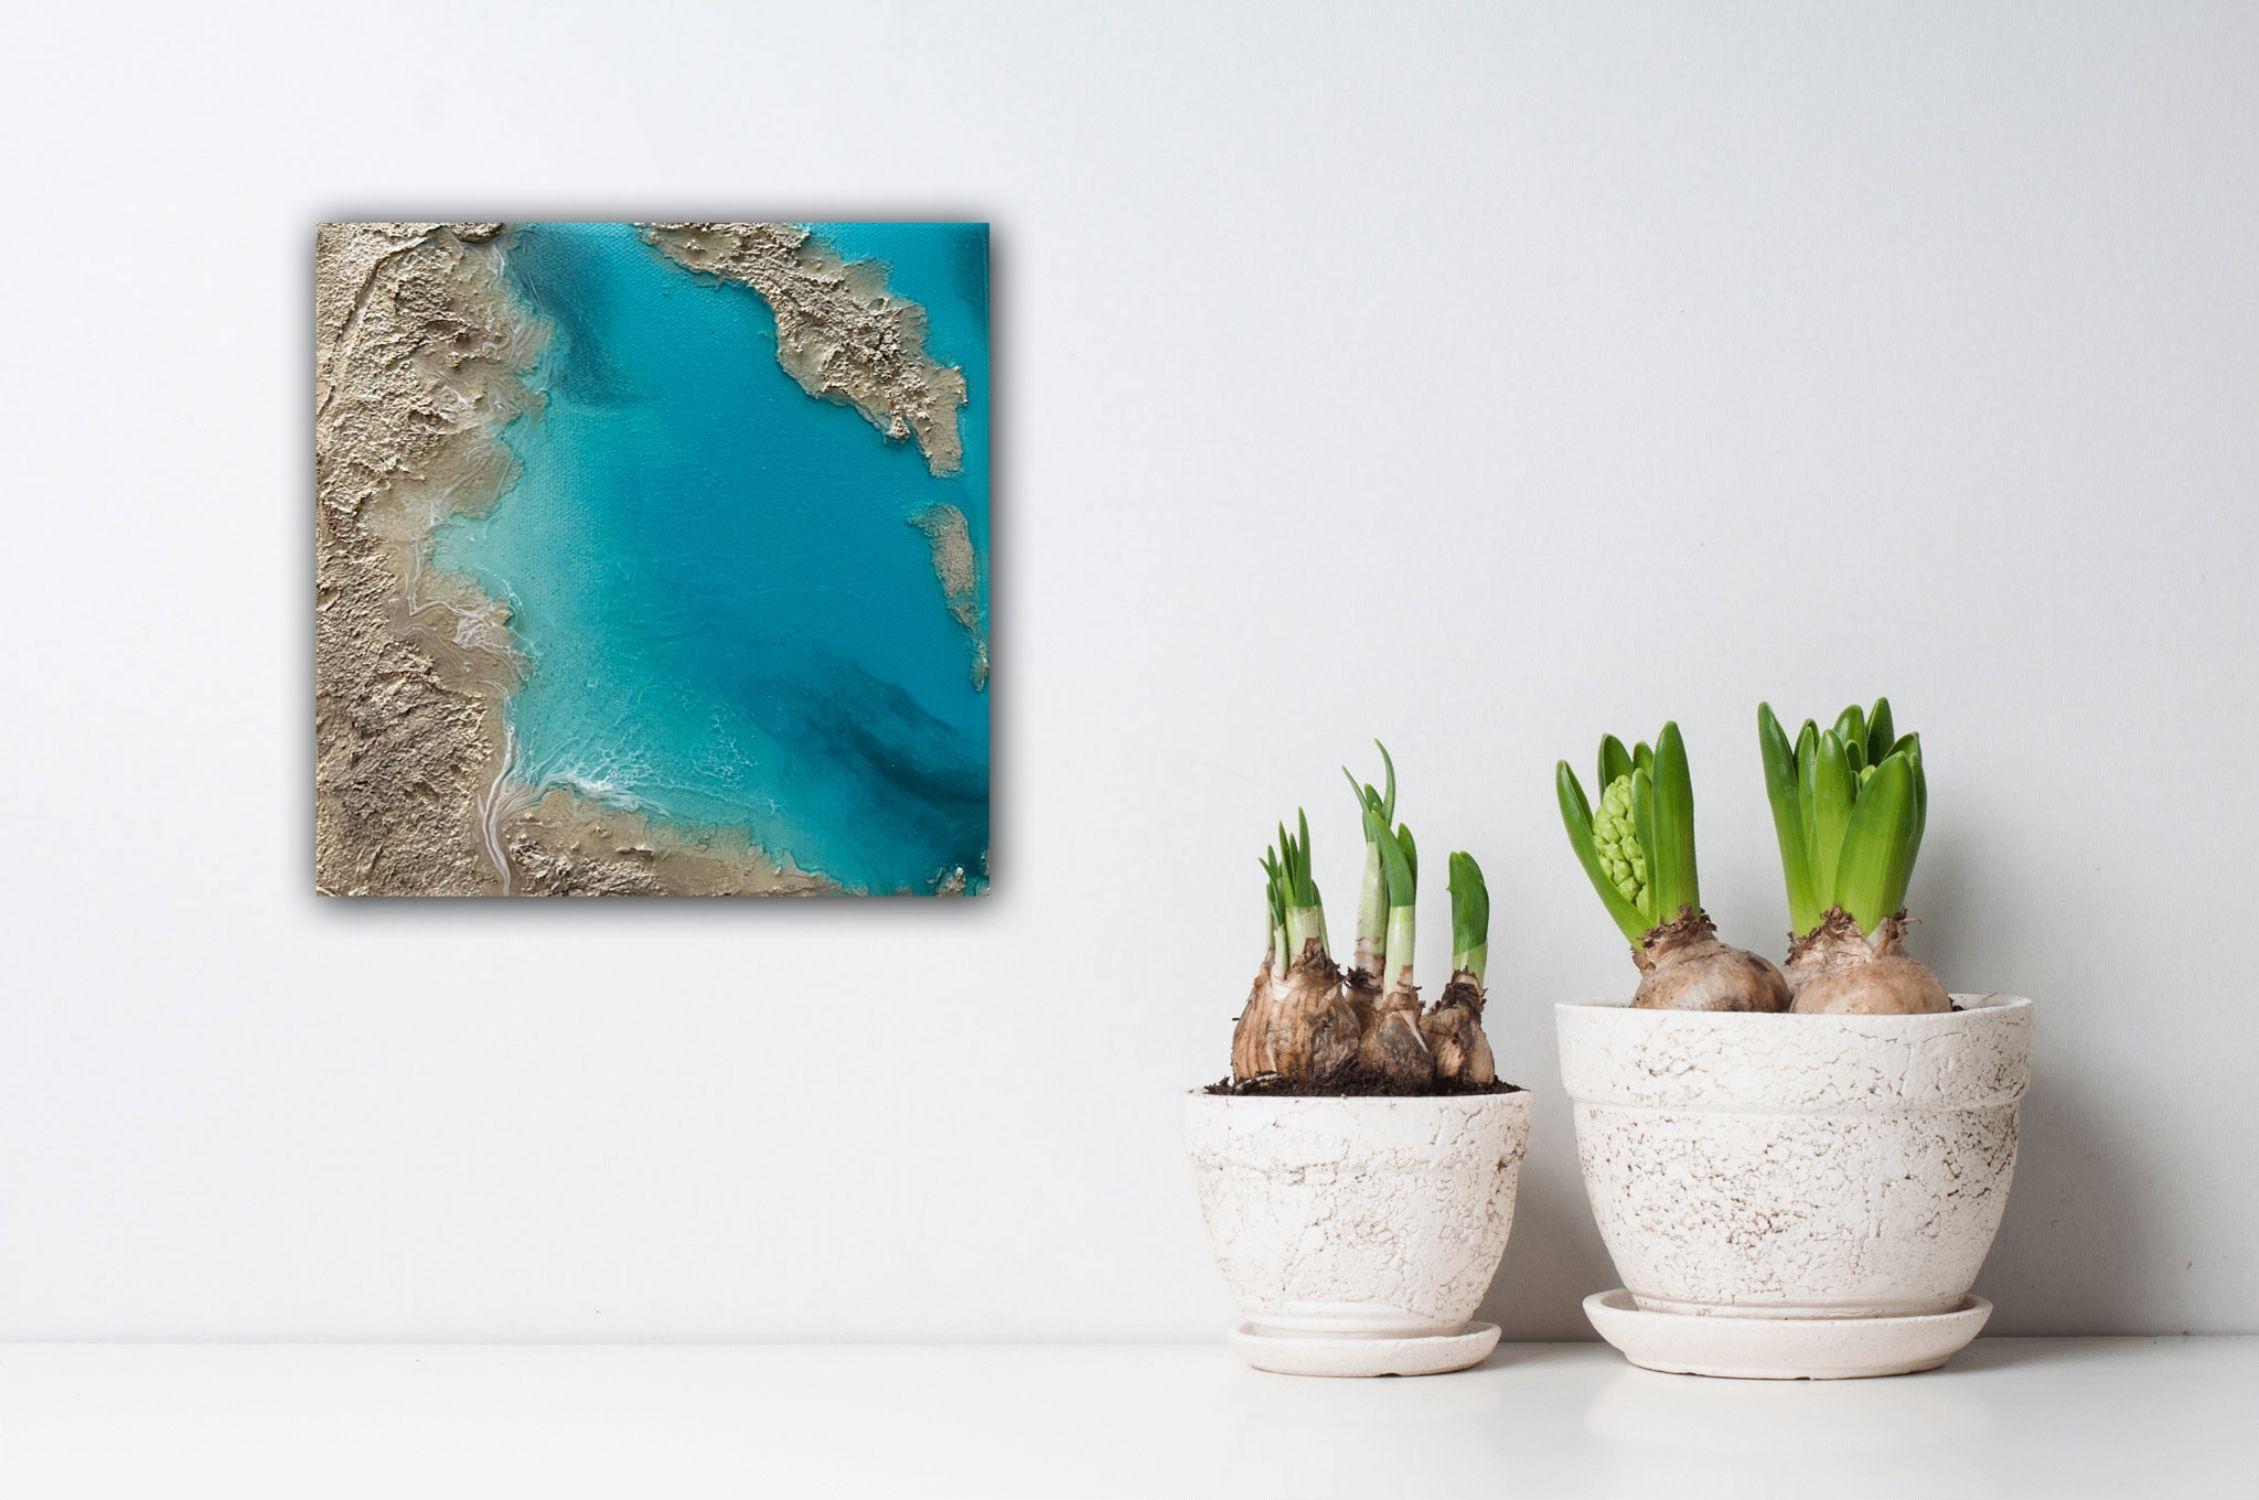 Peinture de l'océan inspirée par les couleurs de l'océan des Turks et Caicos et des Bahamas, vues d'une perspective aérienne.  Différentes nuances de bleu, de turquoise, de sarcelle, d'aqua, de beige et de blanc.  Ce tableau n'a pas besoin d'être